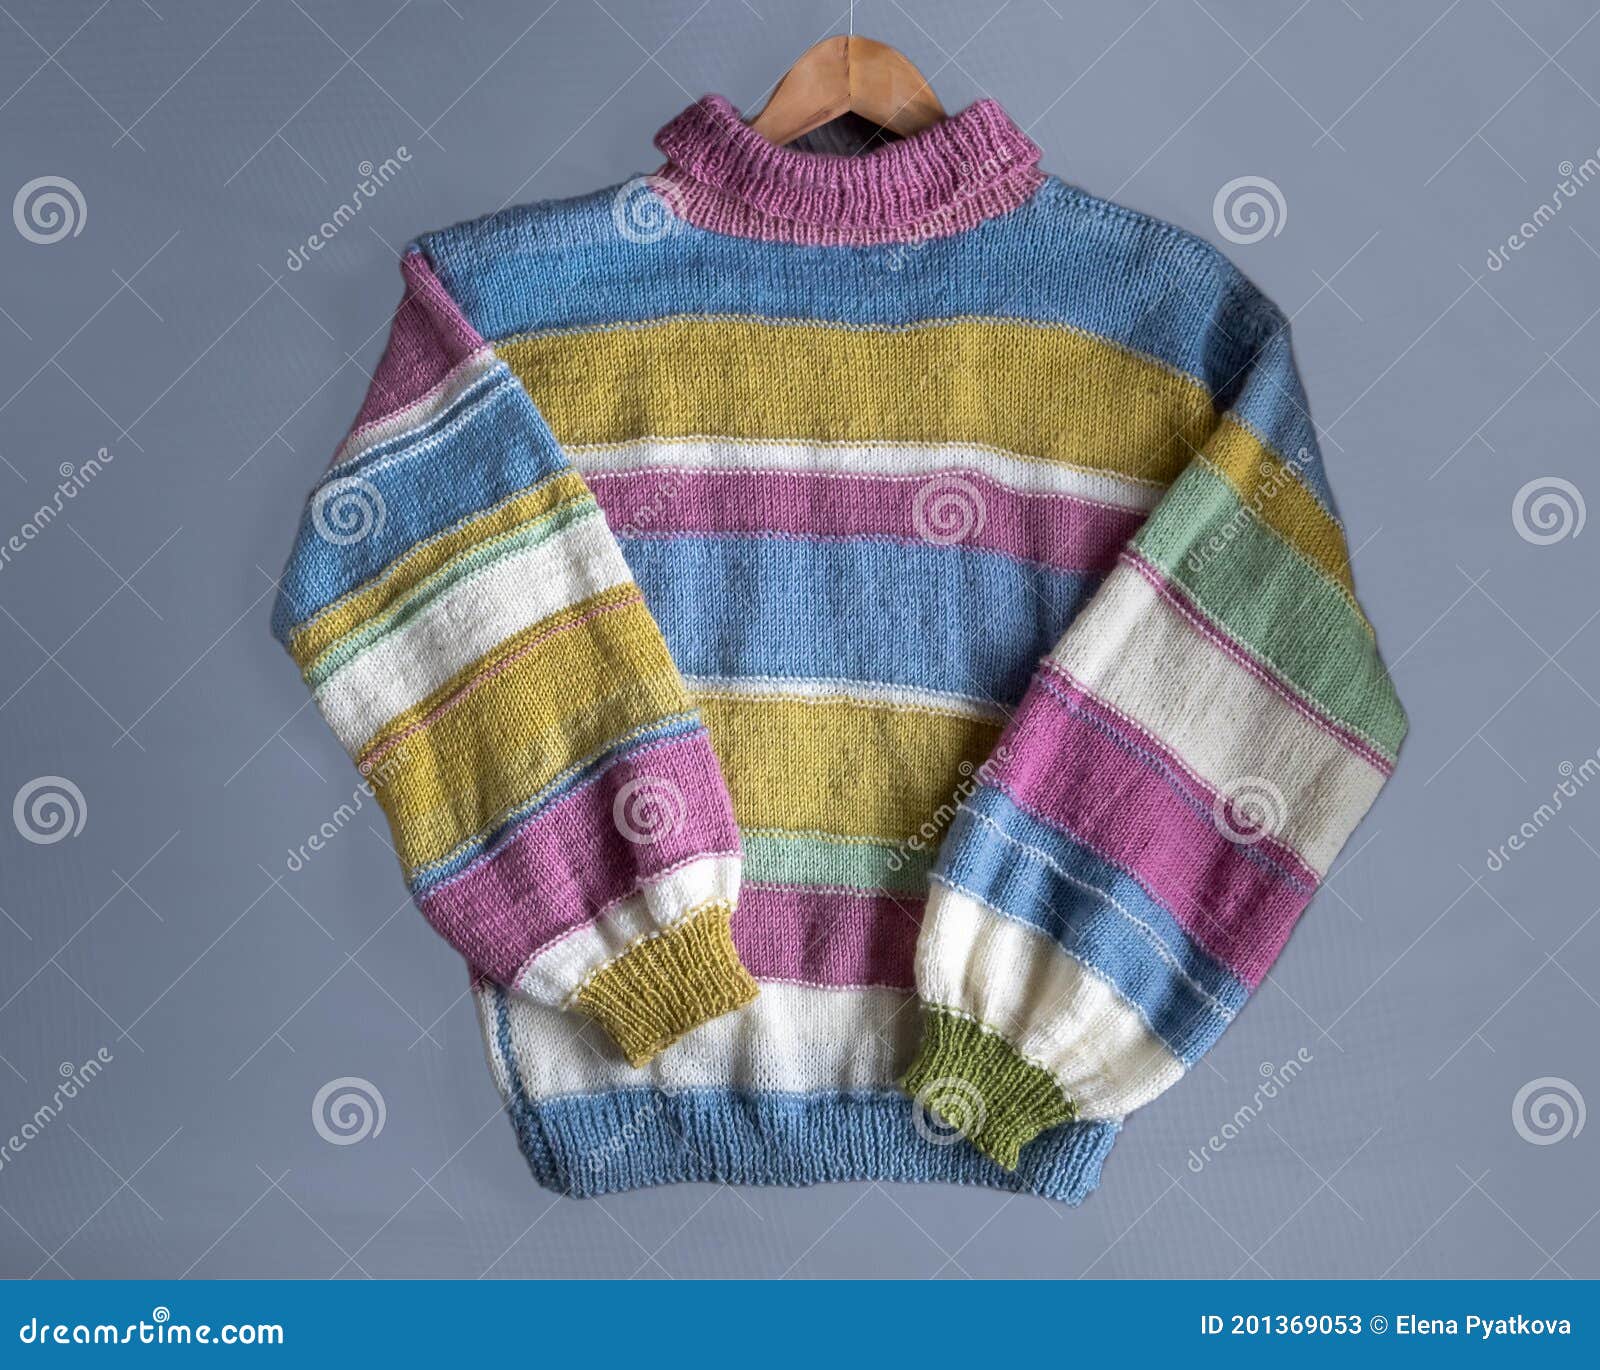 Suéter De Gran Tamaño Para Mujer Discontinuo Tejido a Mano Hecho De Lana  Multicolores Imagen de archivo - Imagen de manera, punto: 201369053